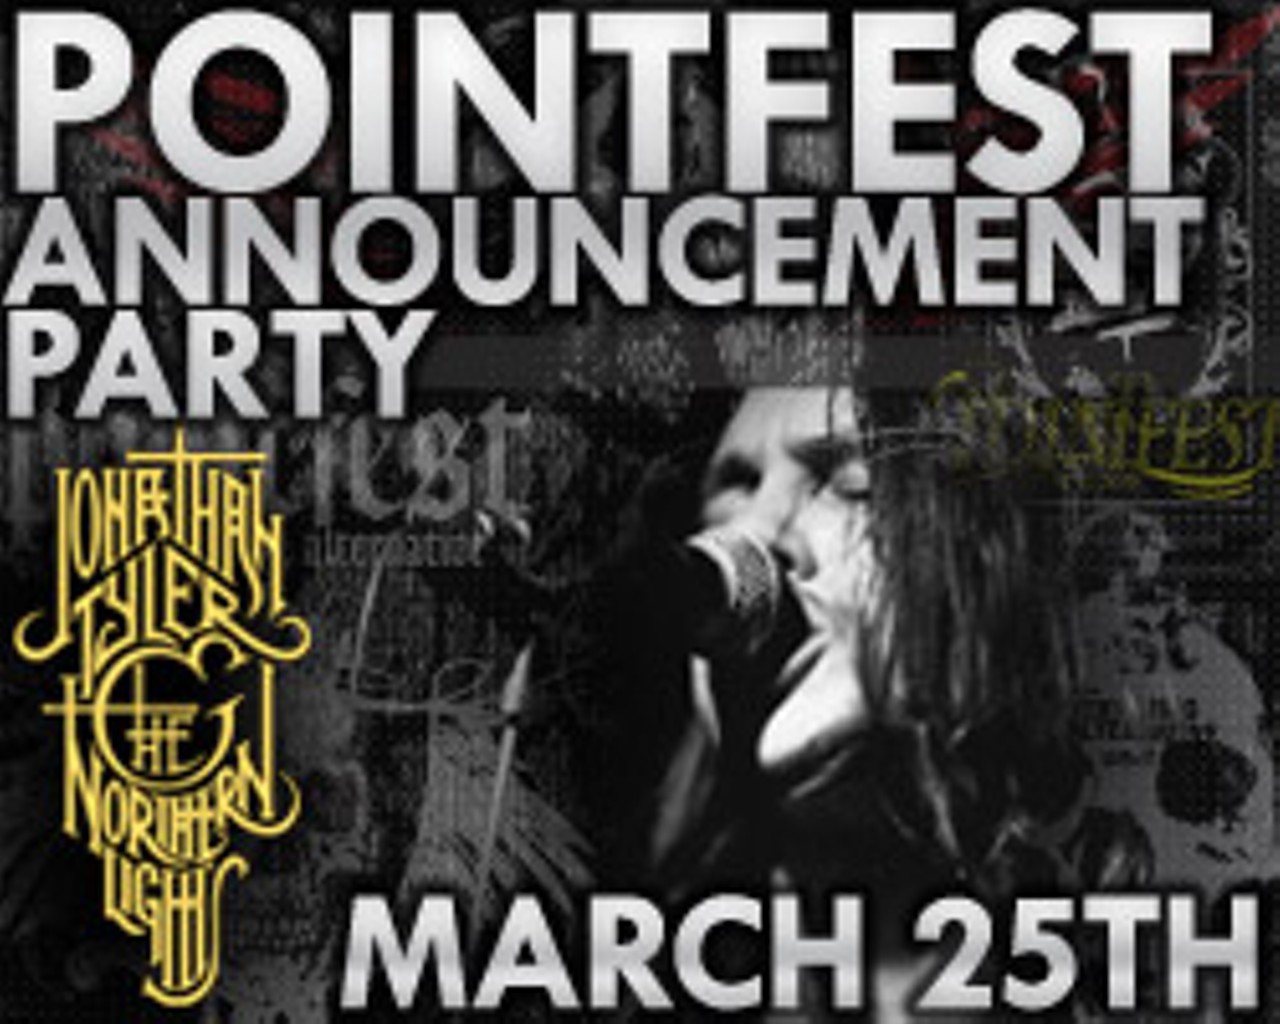 Pointfest Announcement Party